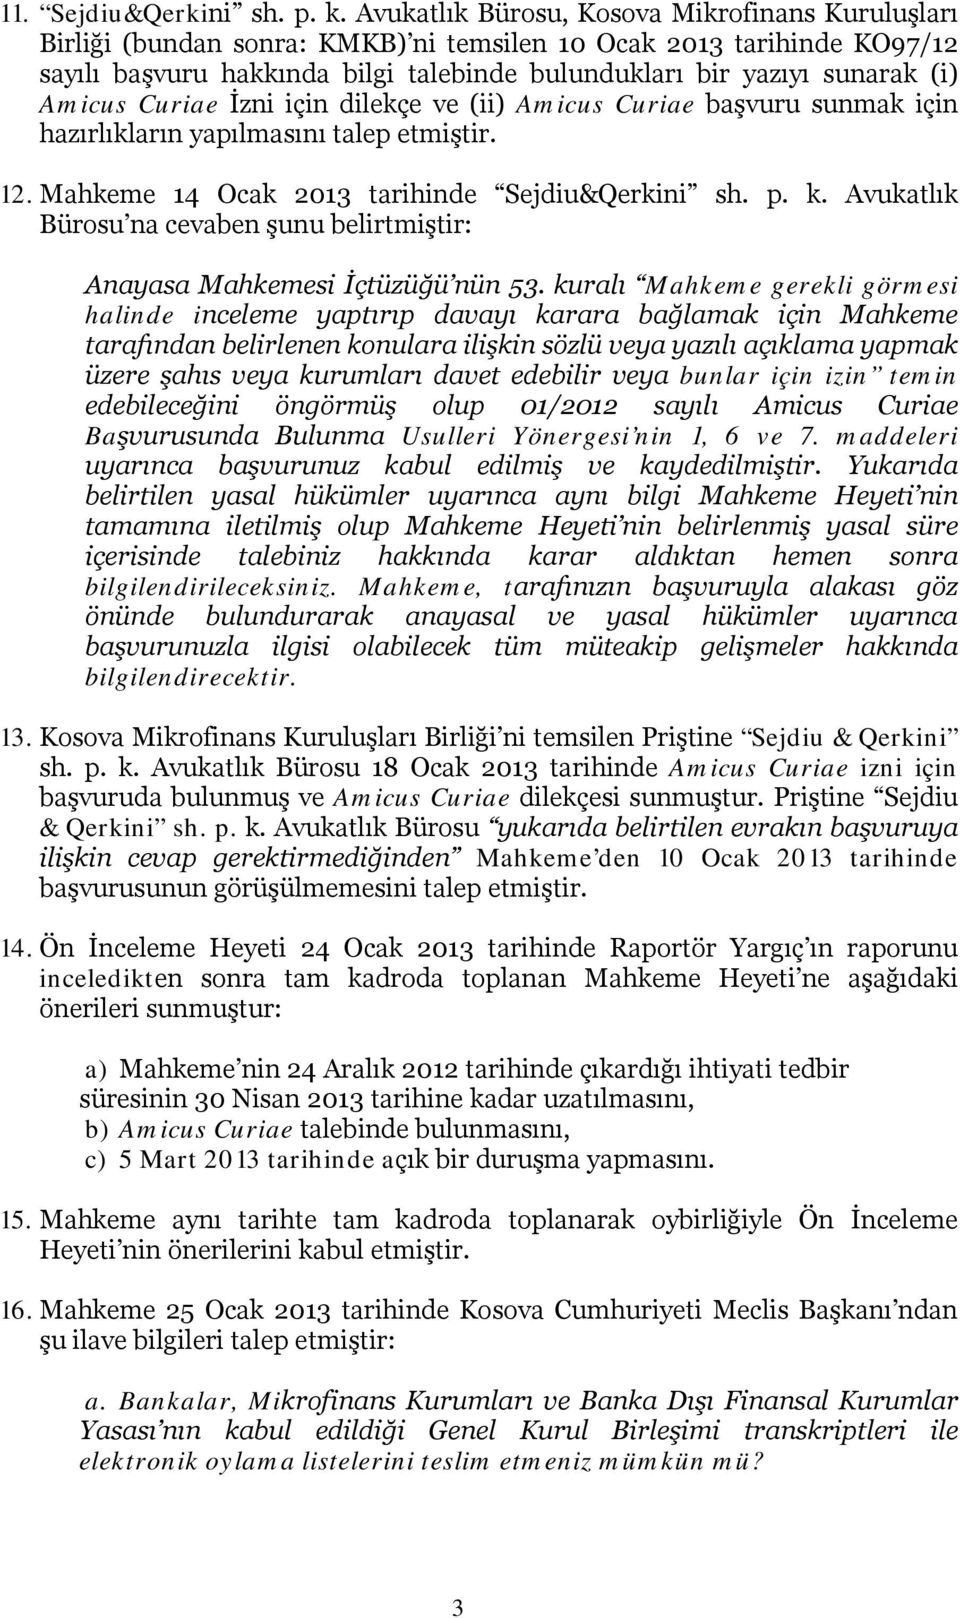 Amicus Curiae İzni için dilekçe ve (ii) Amicus Curiae başvuru sunmak için hazırlıkların yapılmasını talep etmiştir. 12. Mahkeme 14 Ocak 2013 tarihinde Sejdiu&Qerkini sh. p. k.